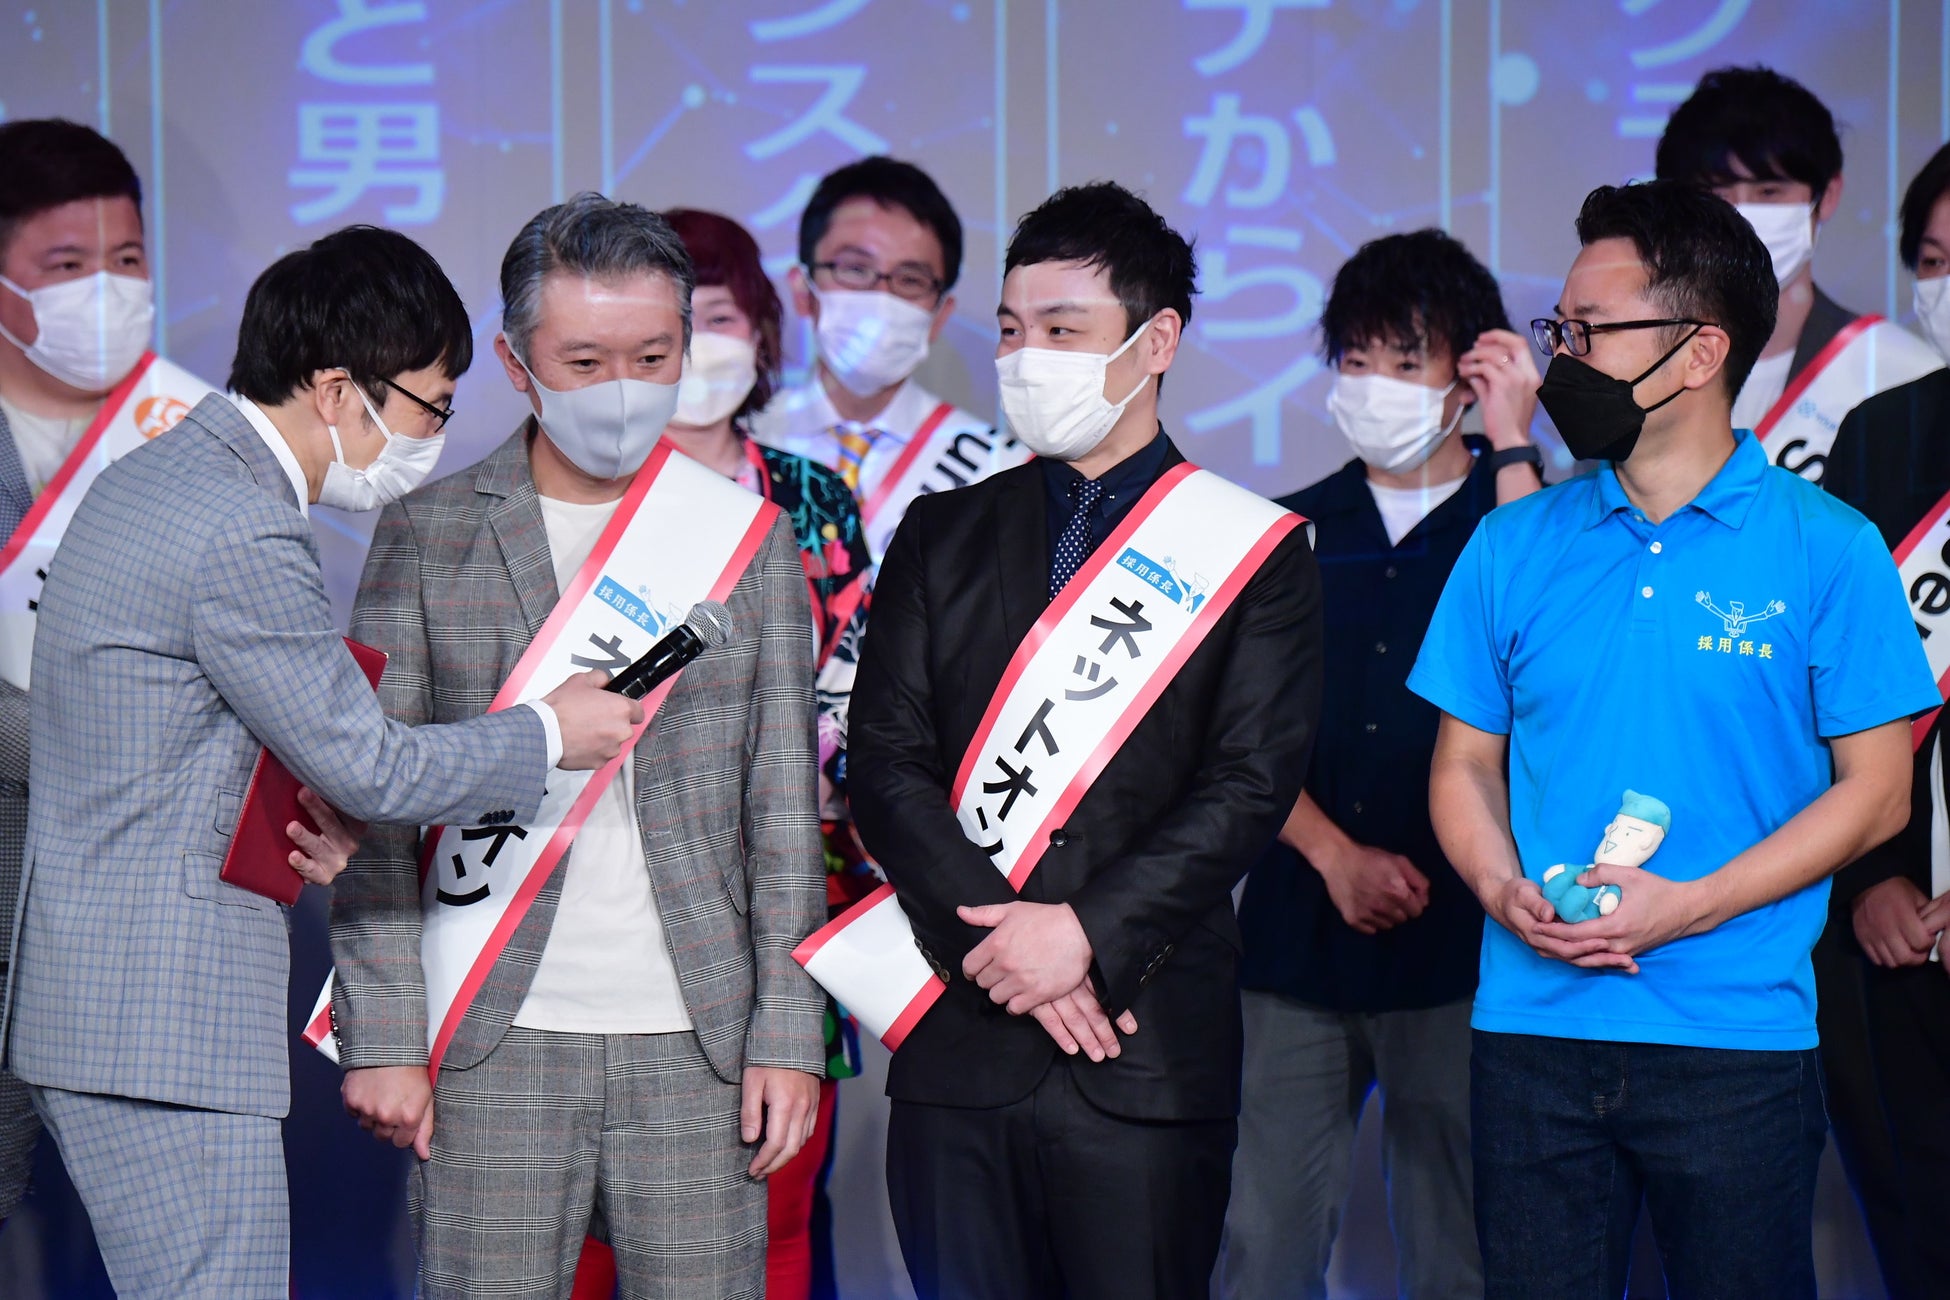 吉本興業の芸人と大阪発の企業がタッグを組む「ビジネスマン芸人グランプリ」が始動のサブ画像3